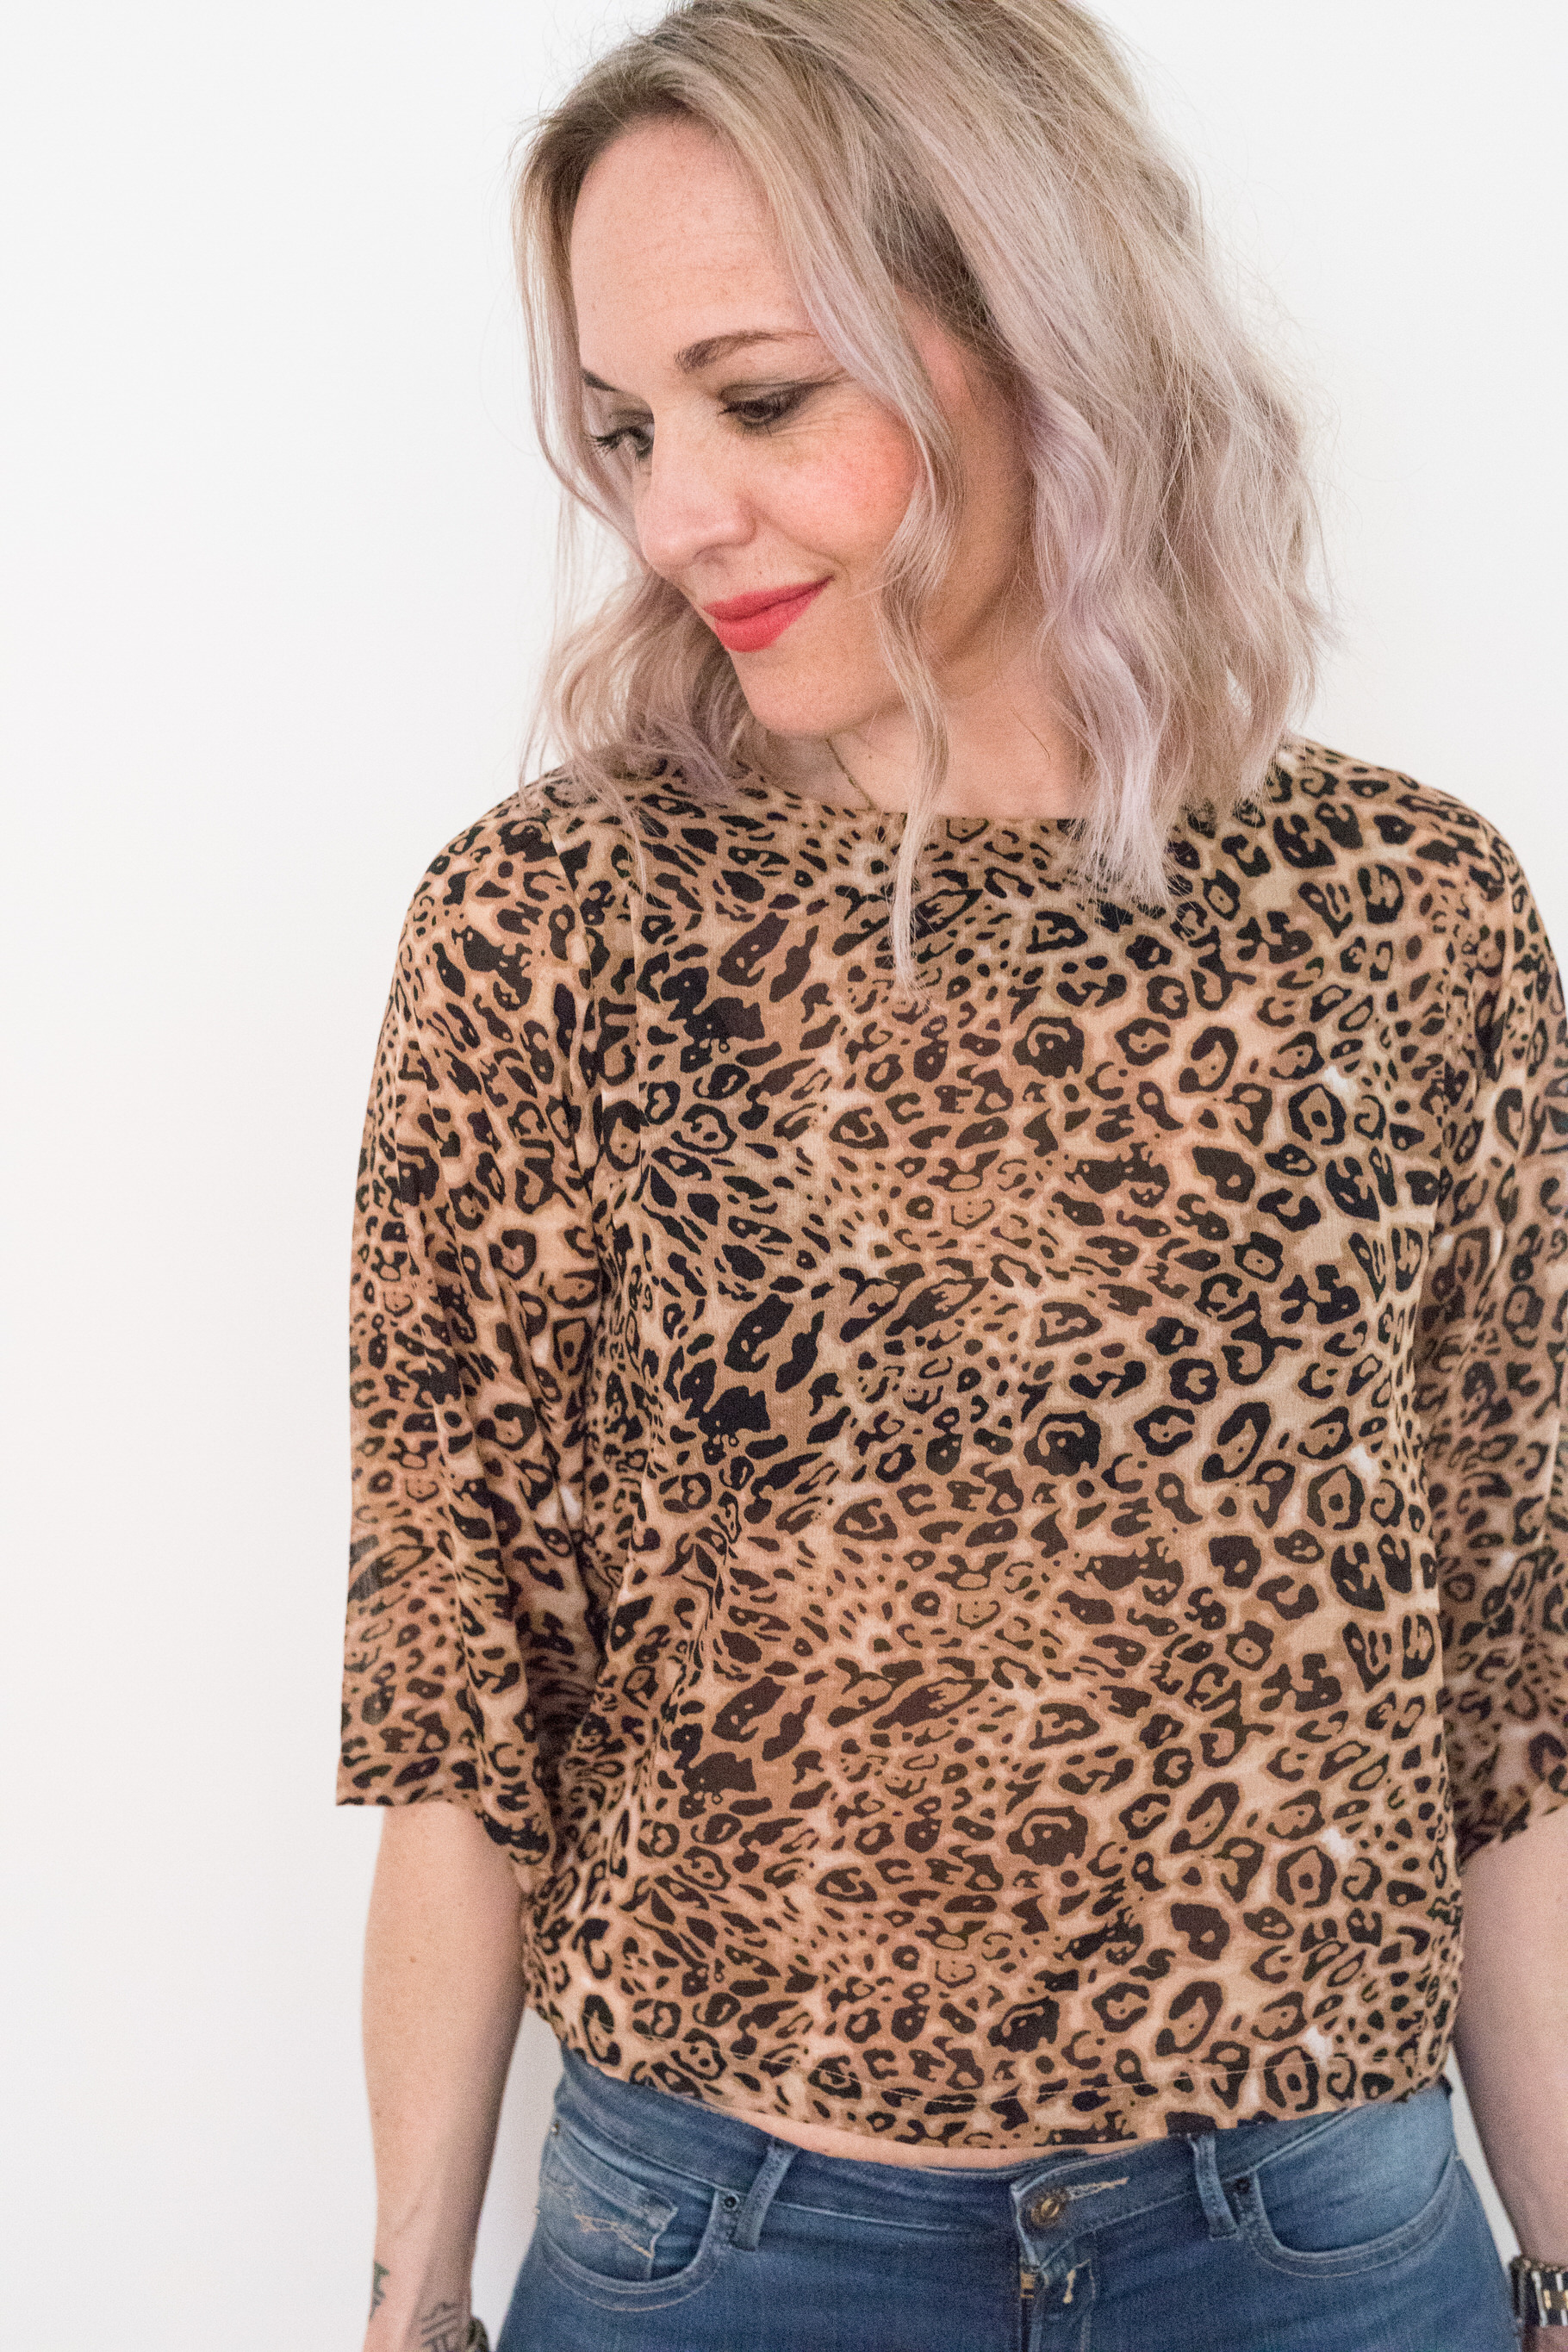 biba leopard print dress